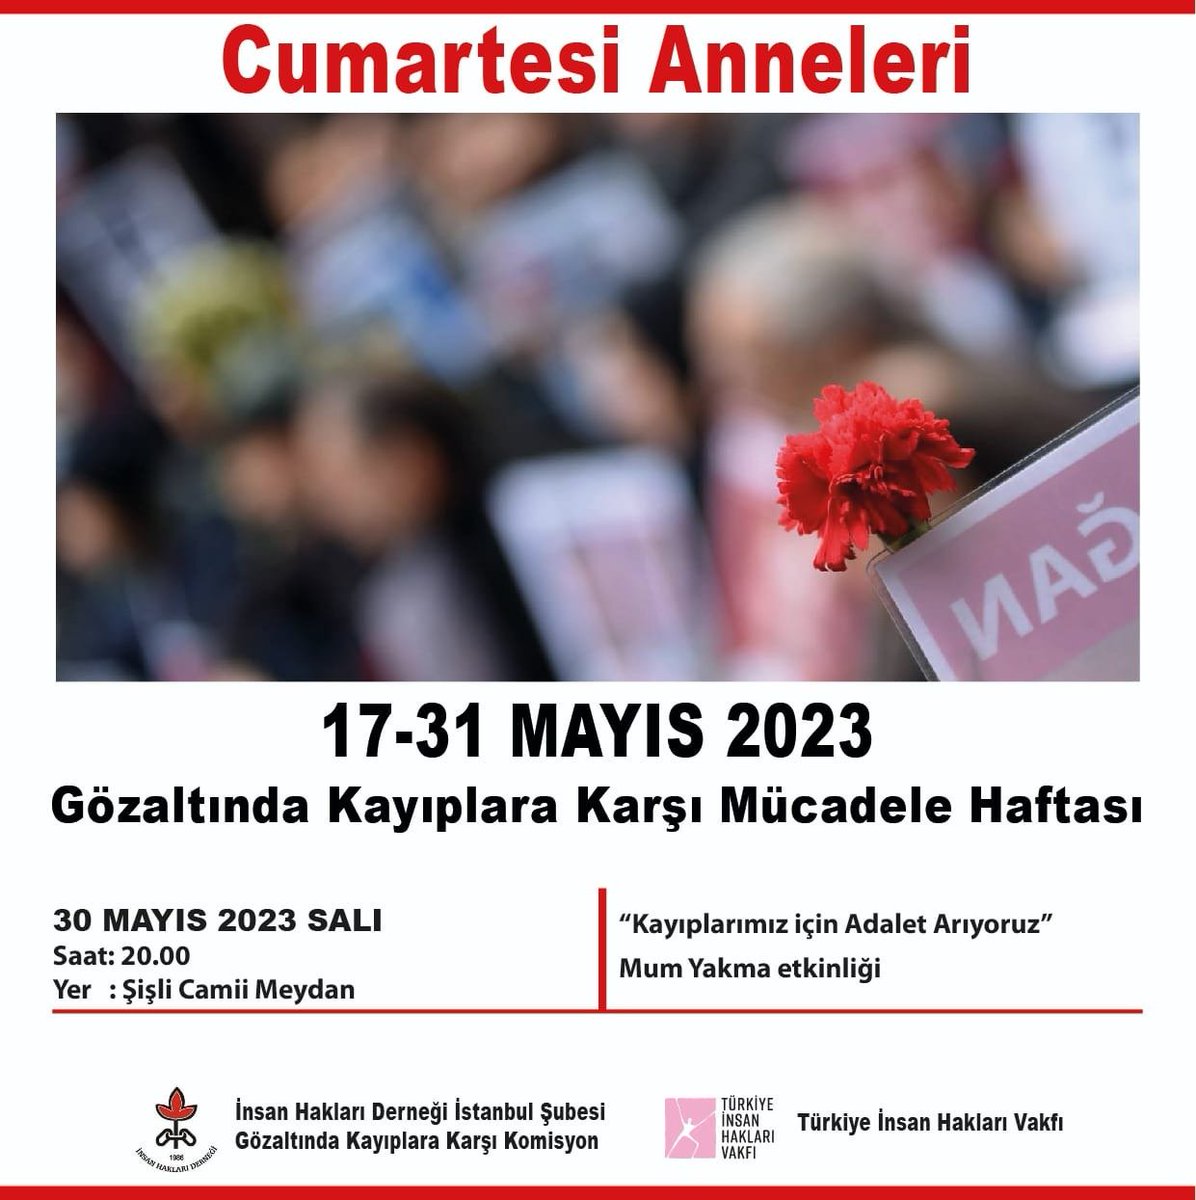 🕯️'Kayıplarımız için Adalet Arıyoruz' 🕯️

🗓️30 Mayıs 2023, Salı 
⏰ 20.00 
📍Şişli Camii Meydan

@CmrtesiAnneleri @ihdistanbul